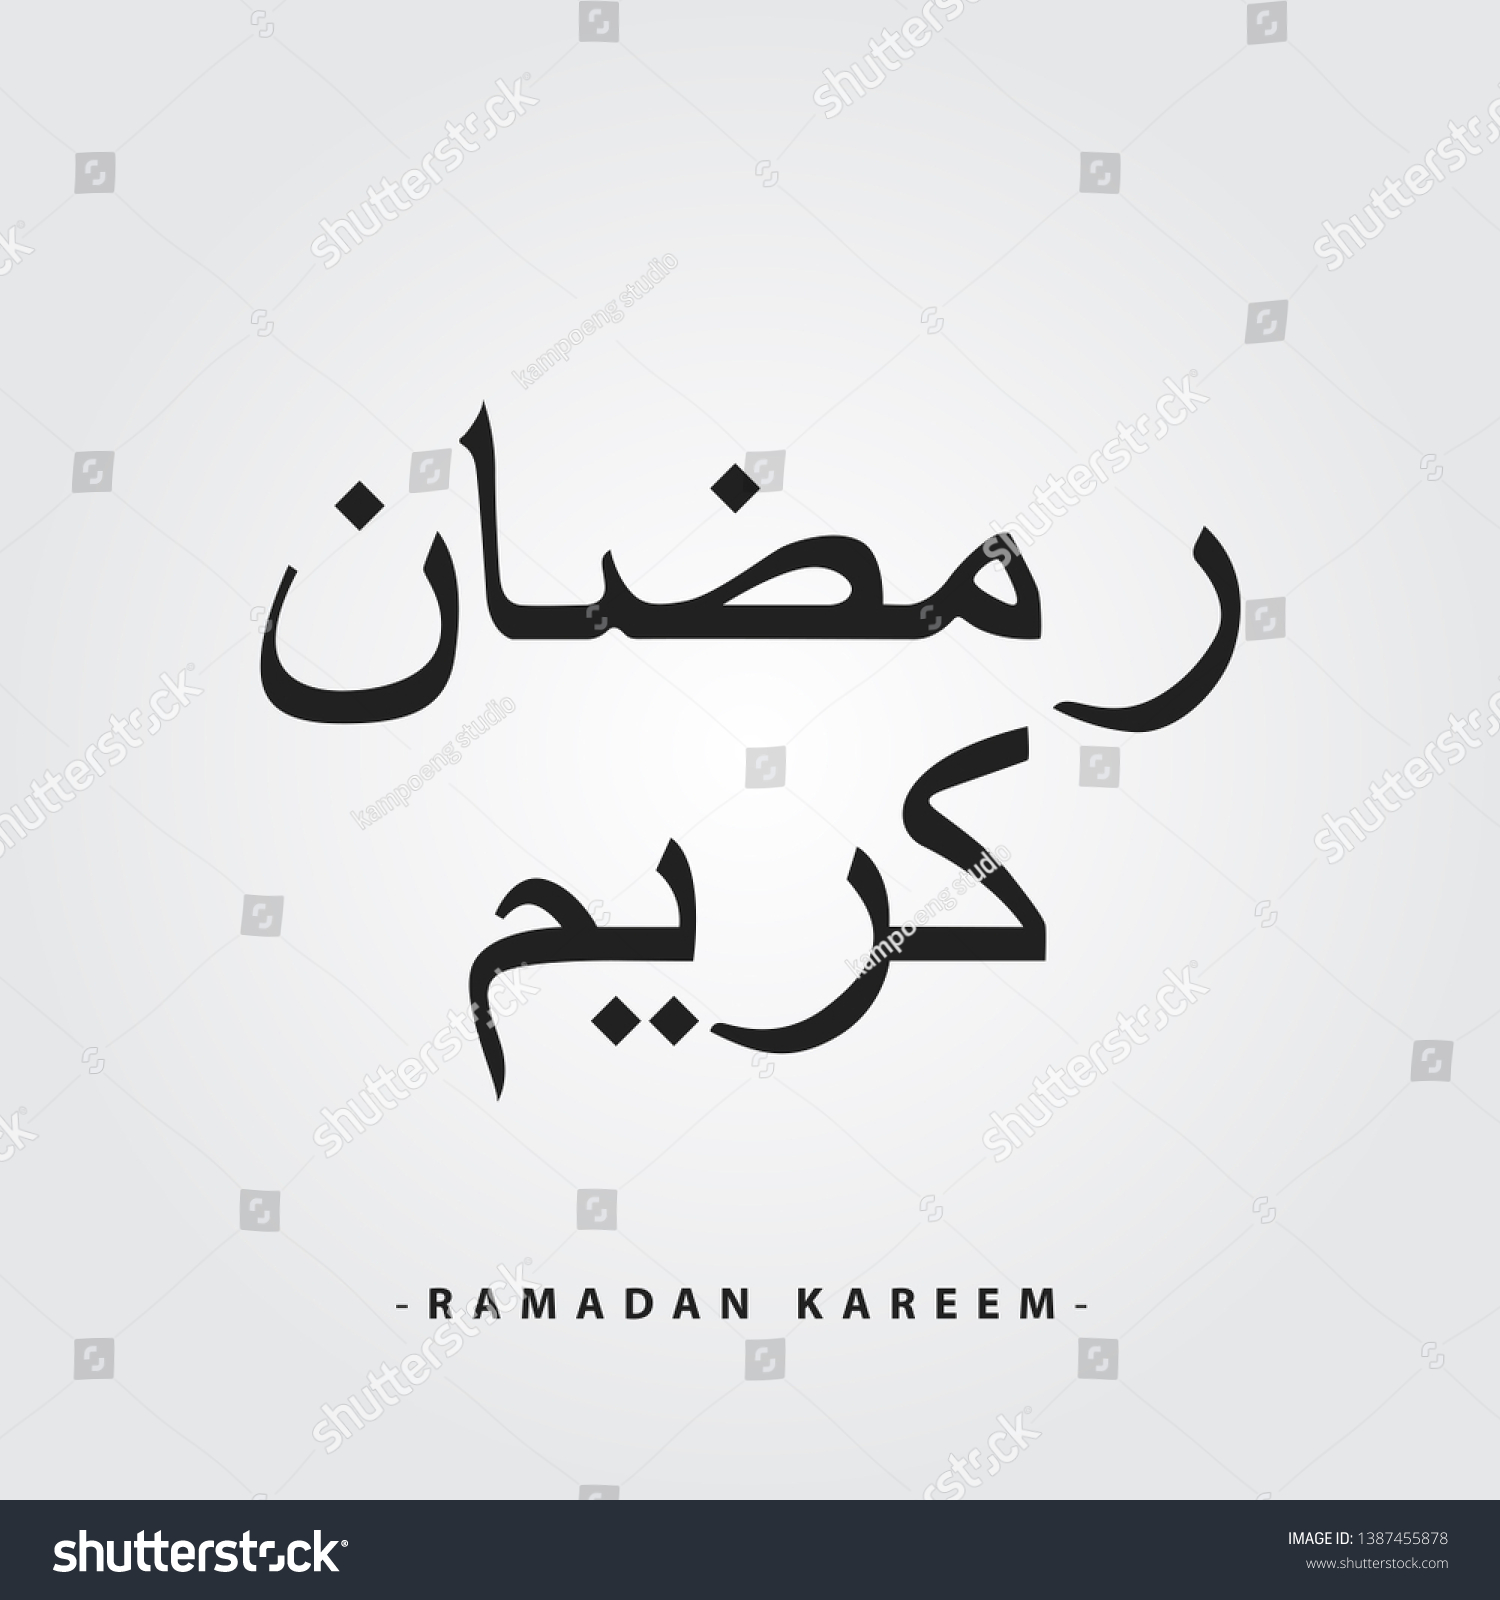 Ramadan kareem arabic